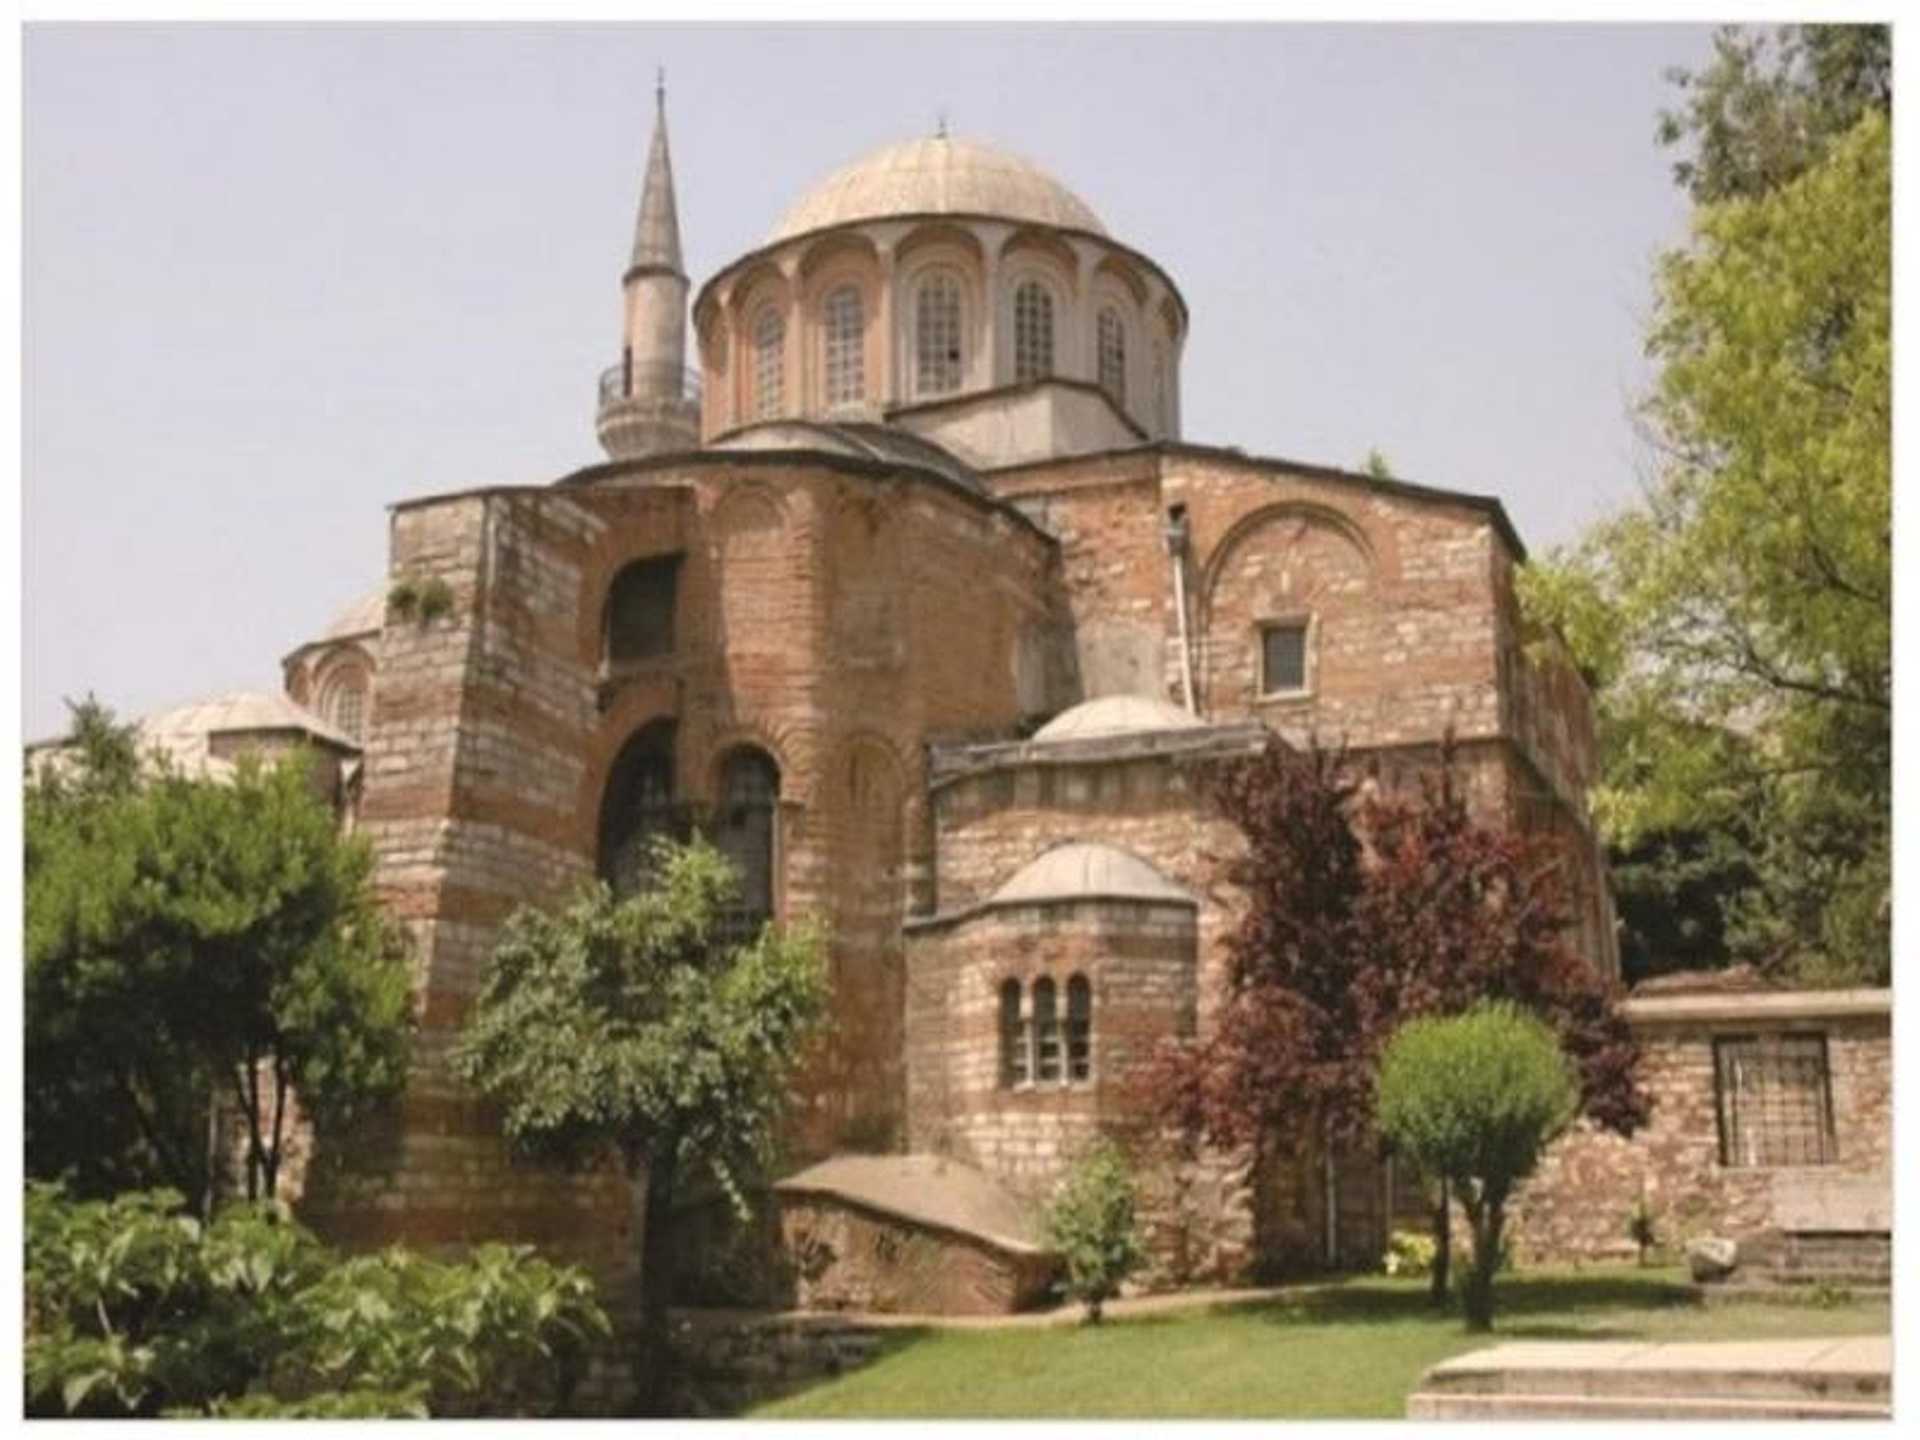 Tour to Byzantium